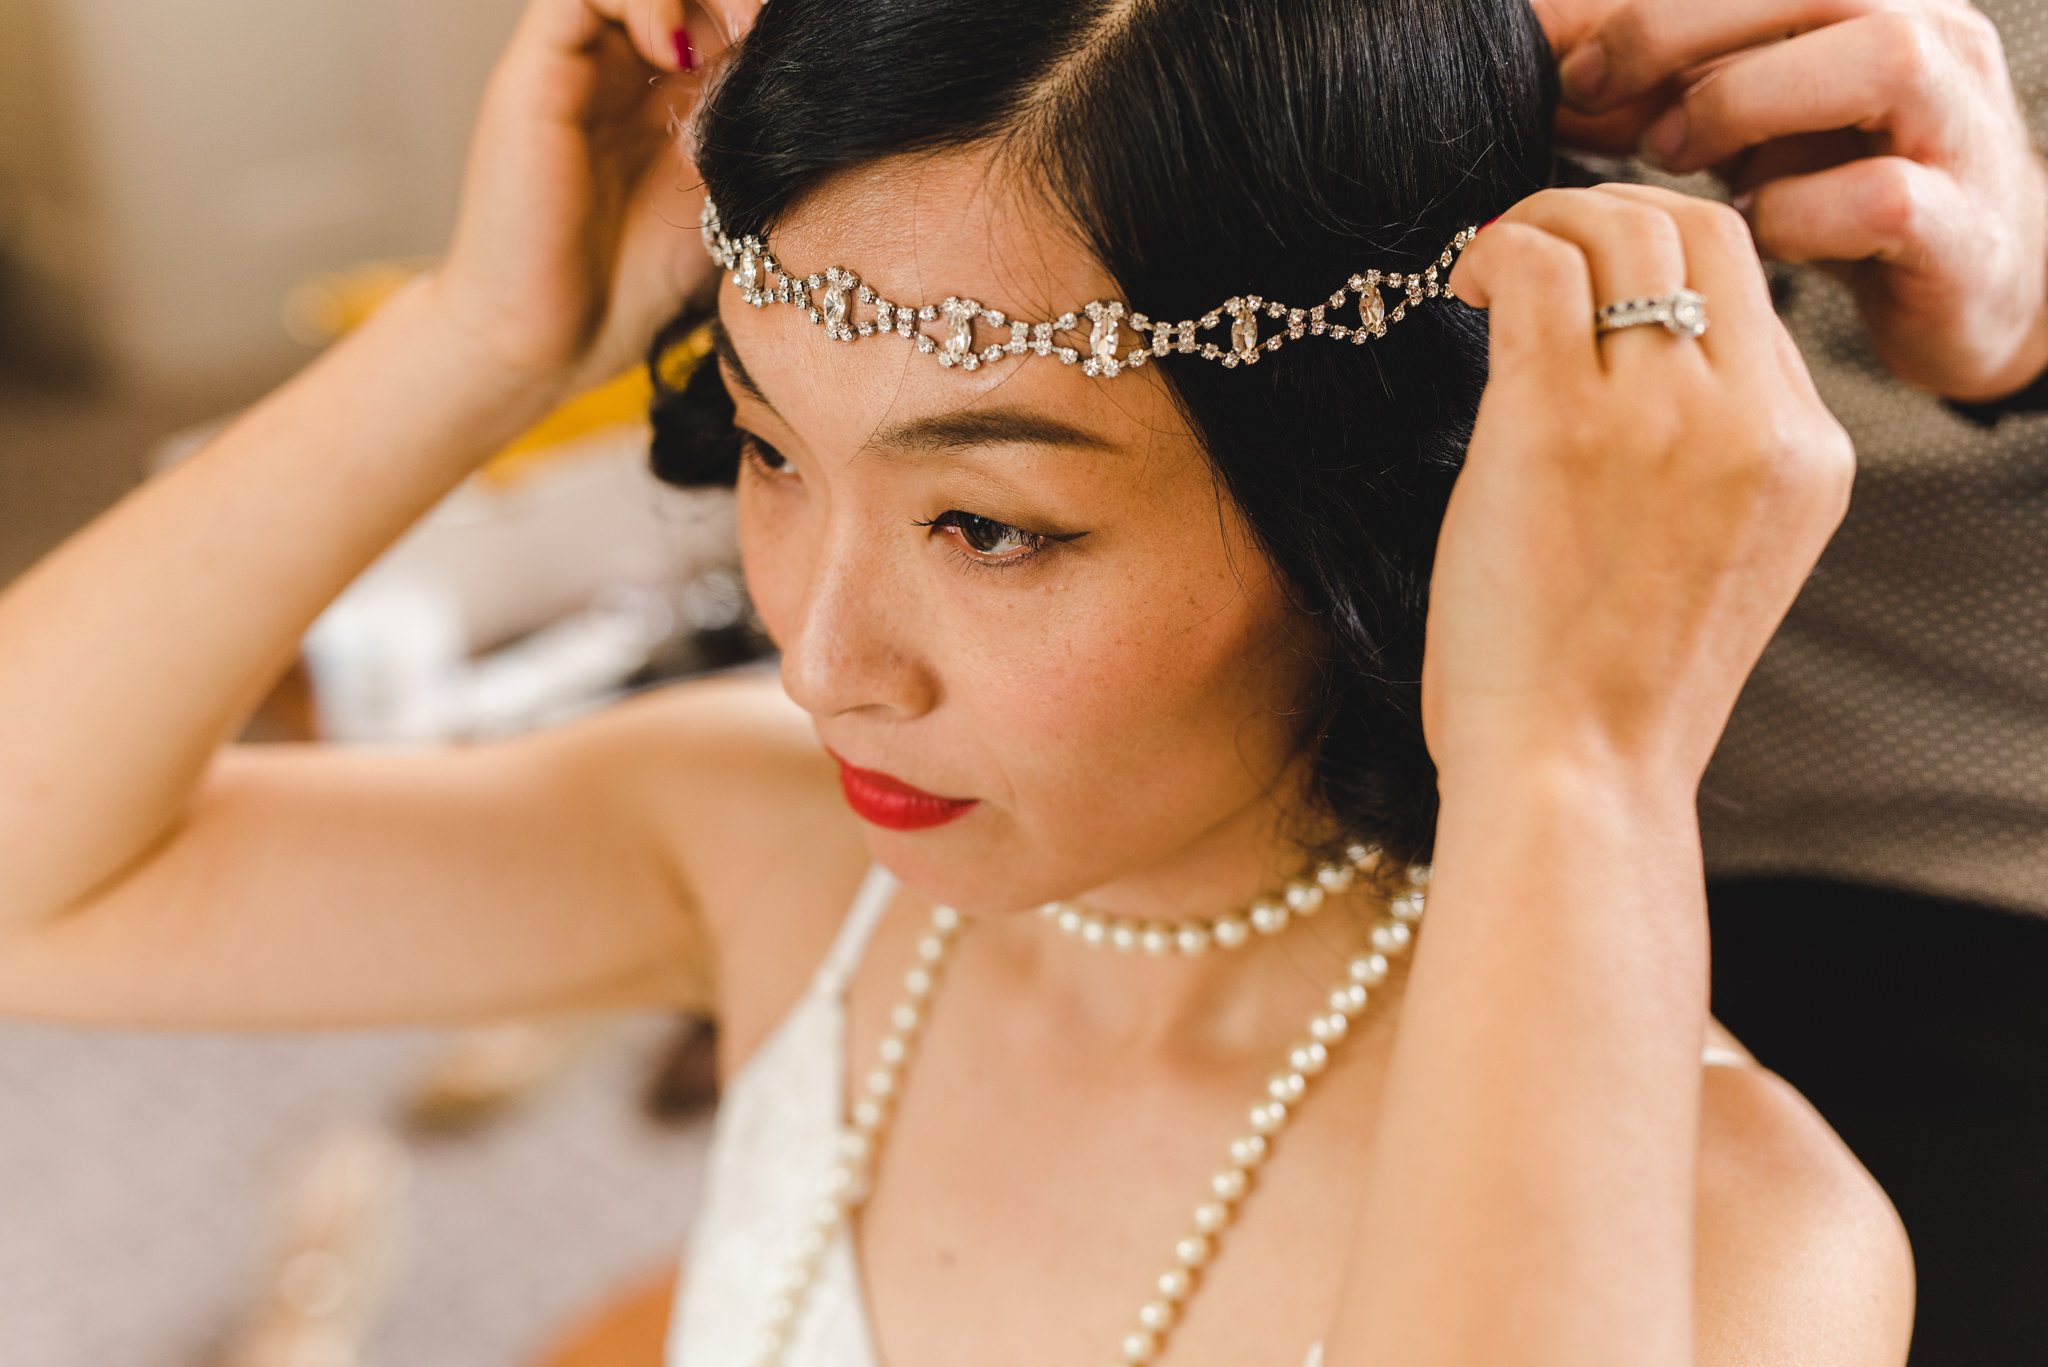 Chinese bride putting on her tiara